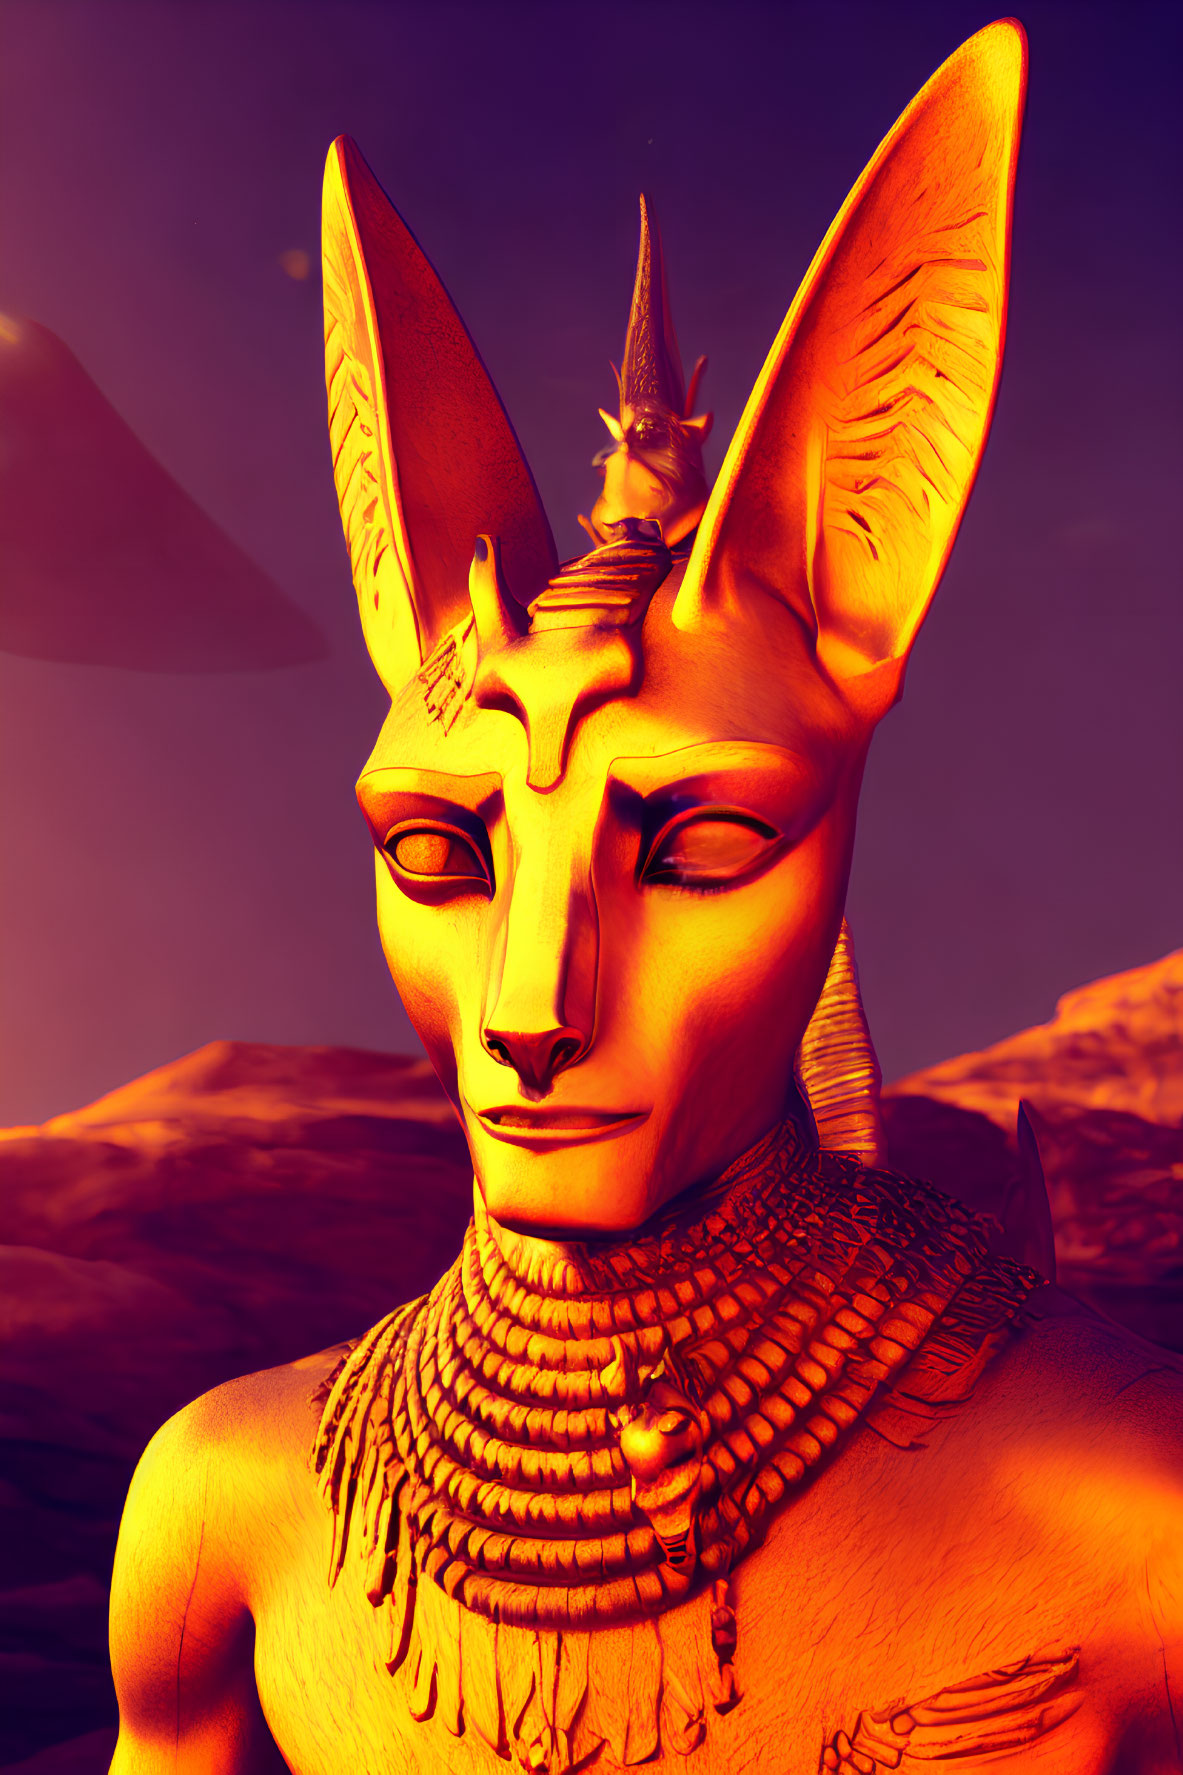 Anthropomorphic feline figure in Egyptian style against desert backdrop